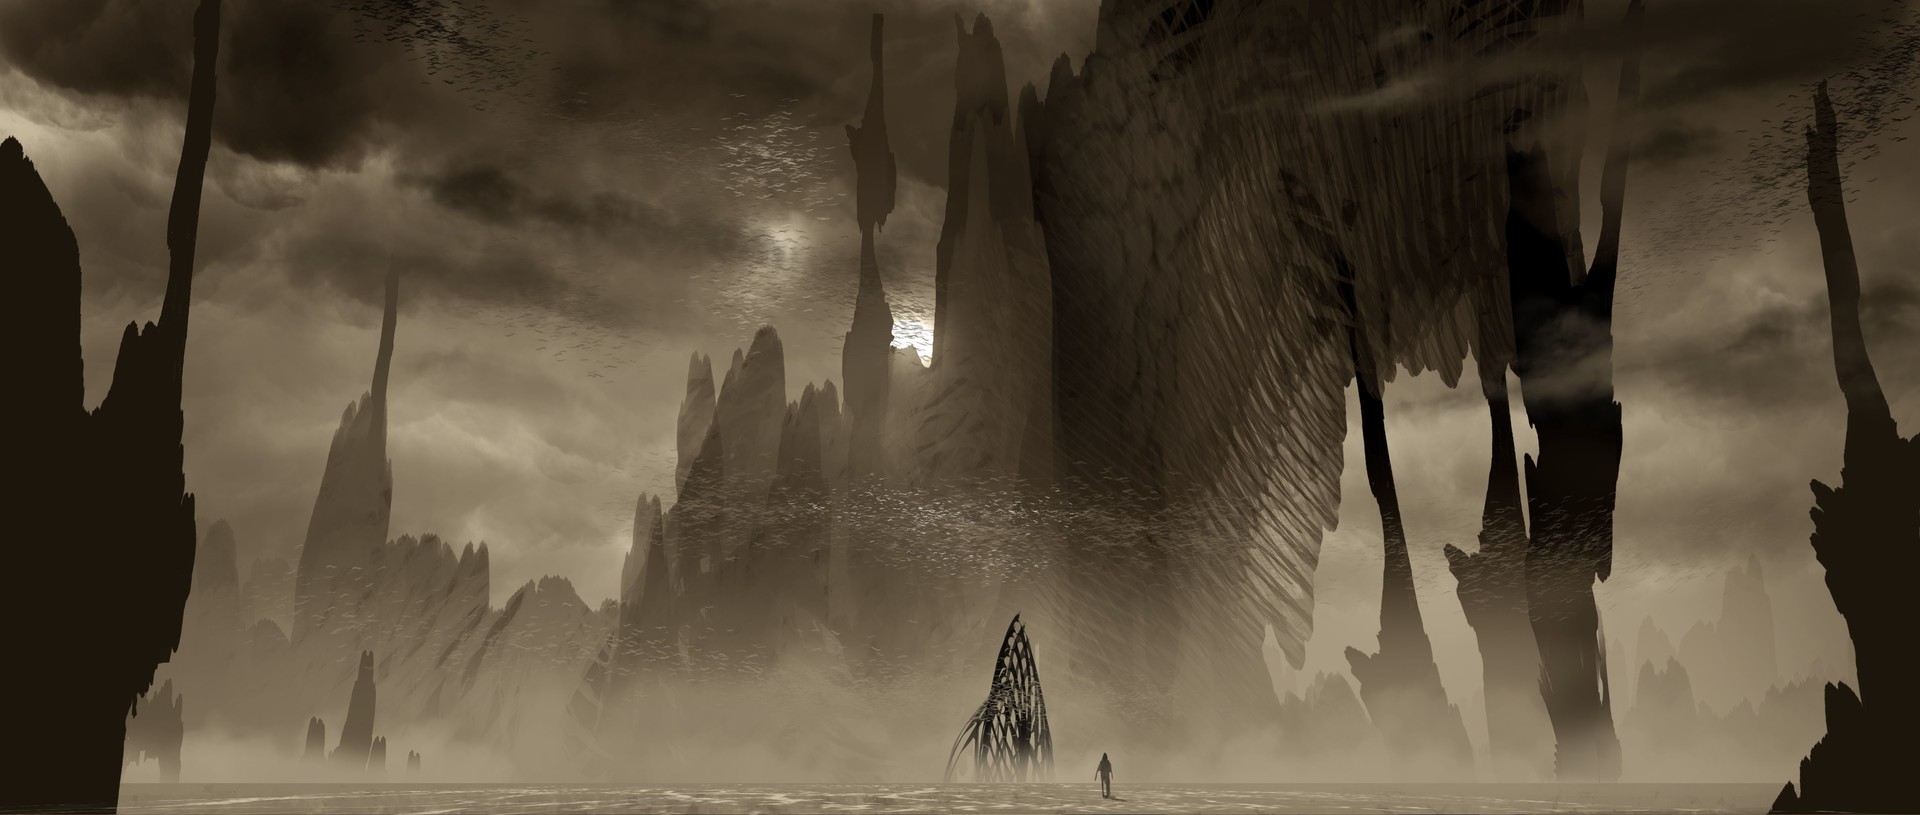 电影 Ender's Game 概念艺术作品-David Levy-32.jpg